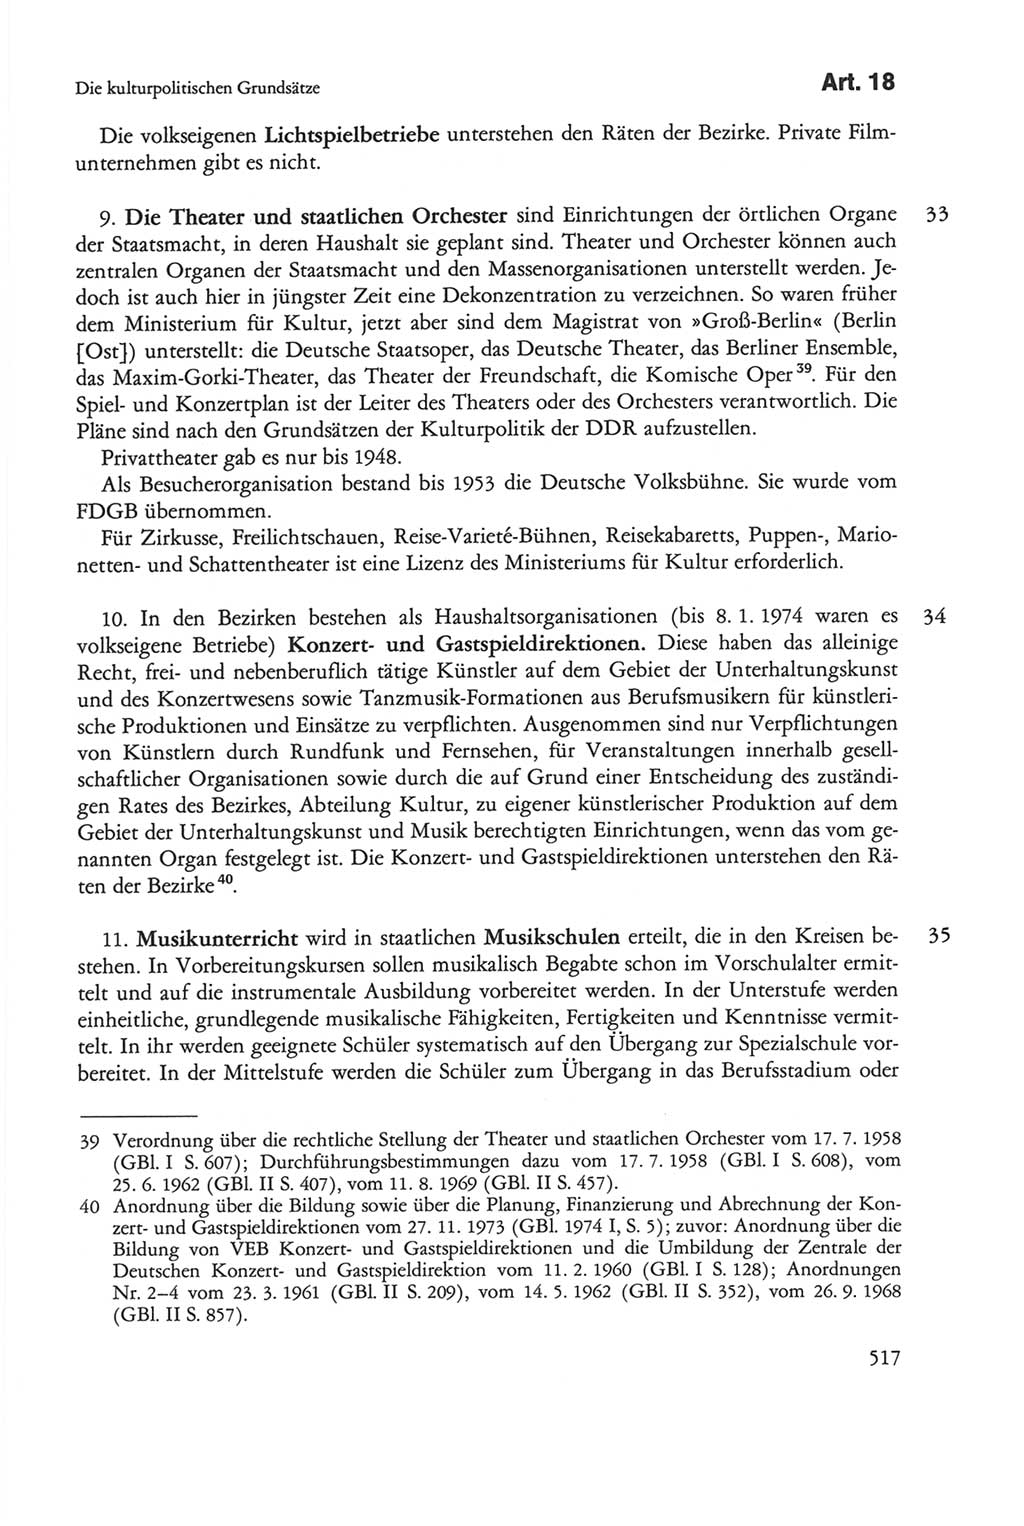 Die sozialistische Verfassung der Deutschen Demokratischen Republik (DDR), Kommentar 1982, Seite 517 (Soz. Verf. DDR Komm. 1982, S. 517)